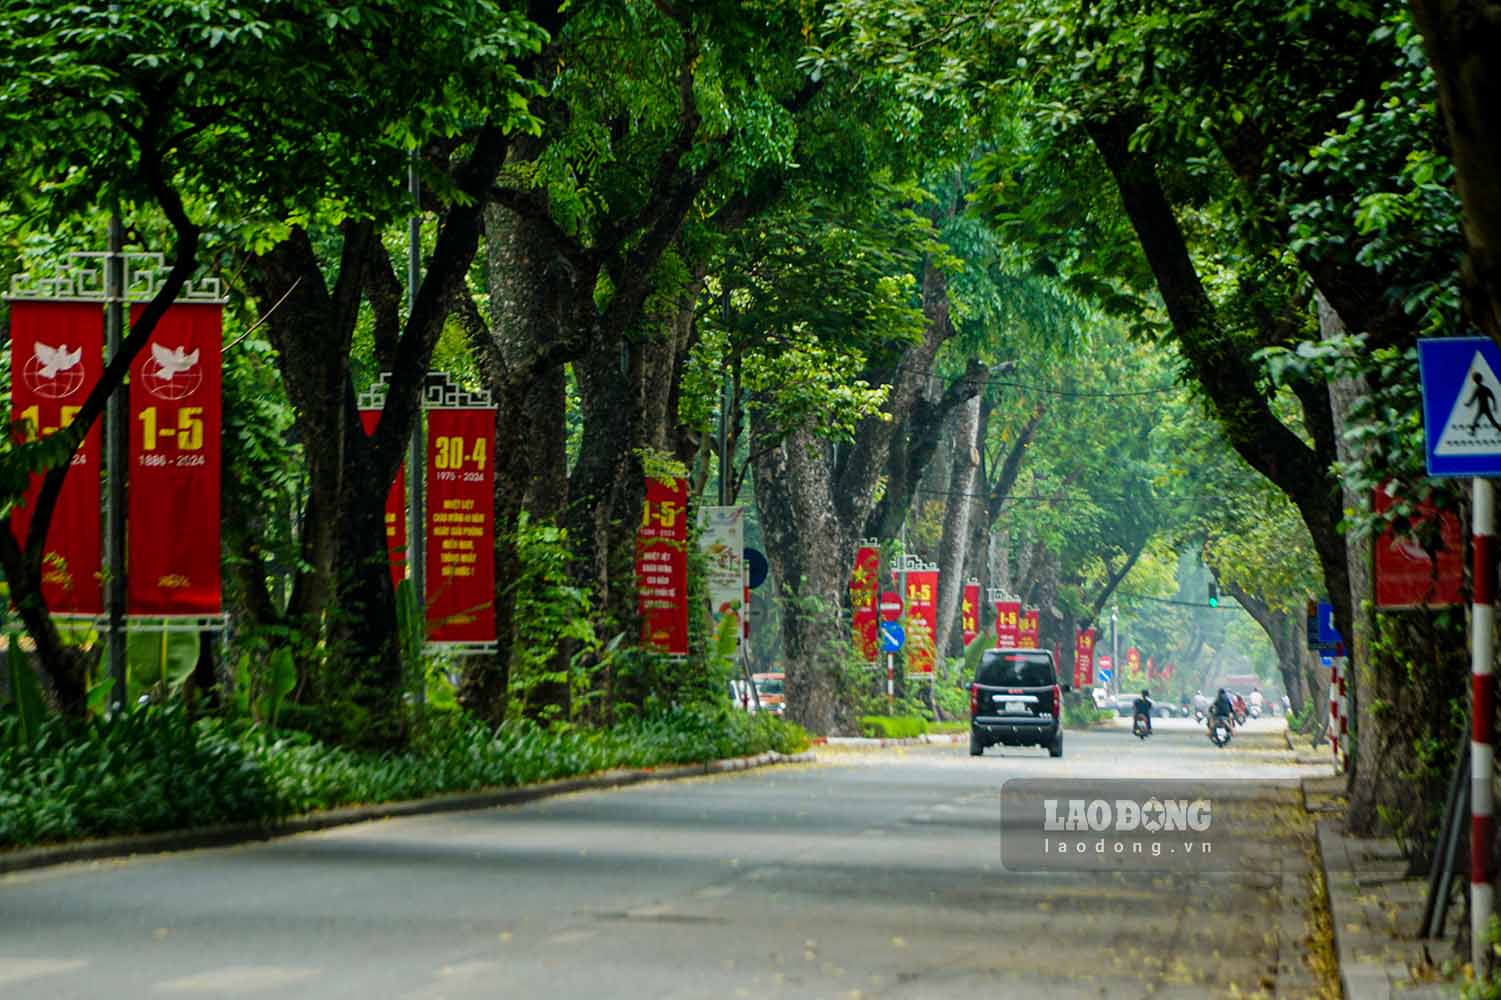 Đường Hoàng Diệu dài khoảng 1,3 km, nối liền hai phố Phan Đình Phùng và Nguyễn Thái Học được che phủ bởi hàng cây xà cừ cổ thụ xanh mát.